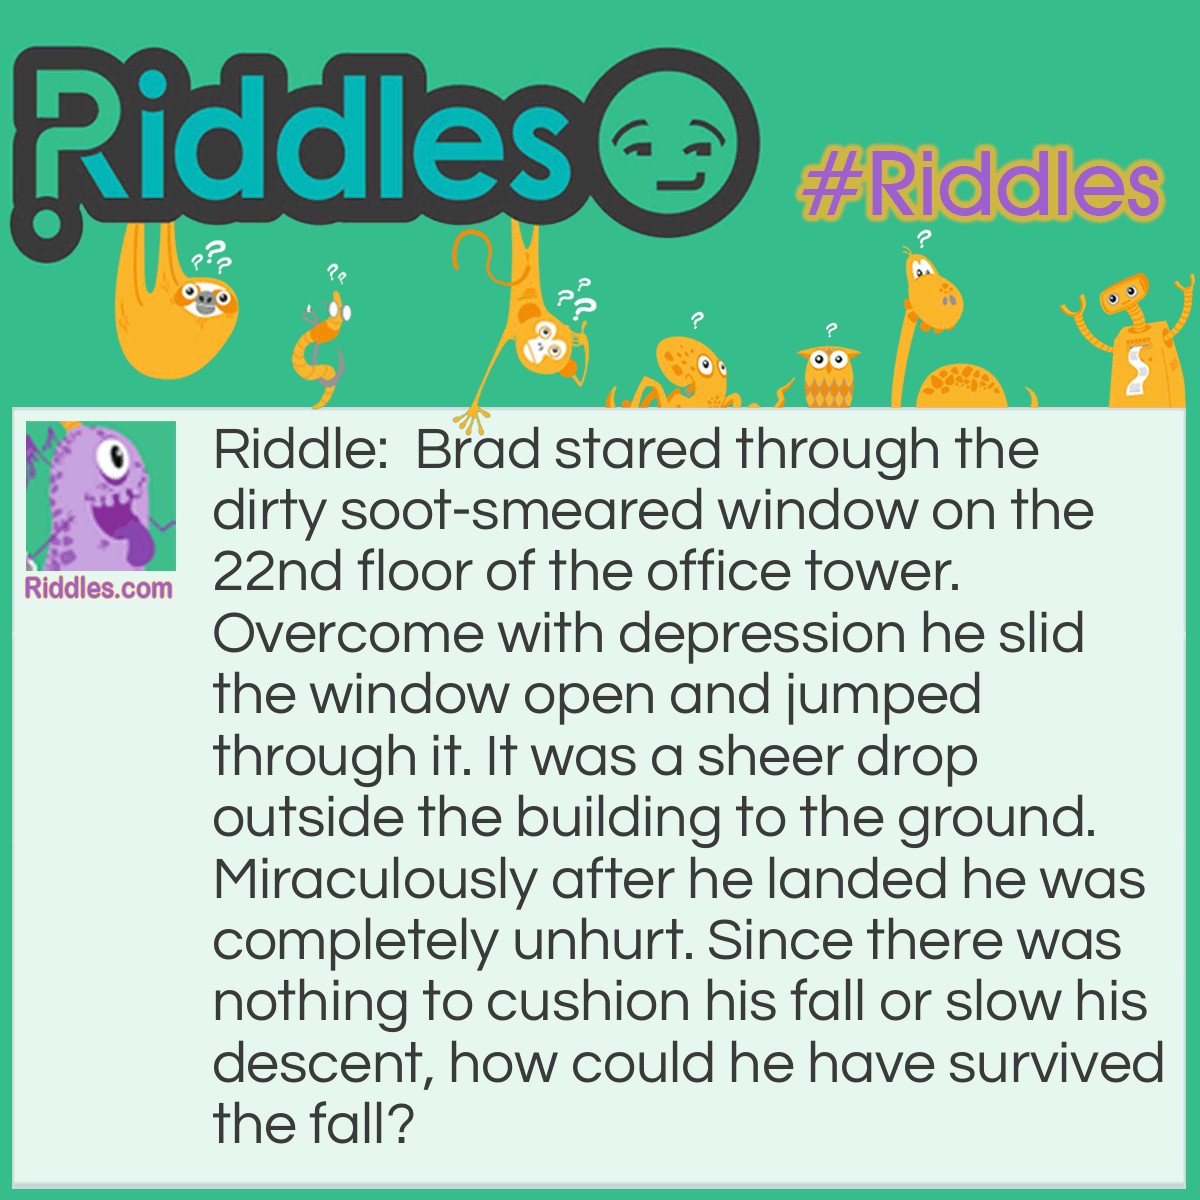 https://riddles.com/img/riddle/square/riddle-meme-249.jpg